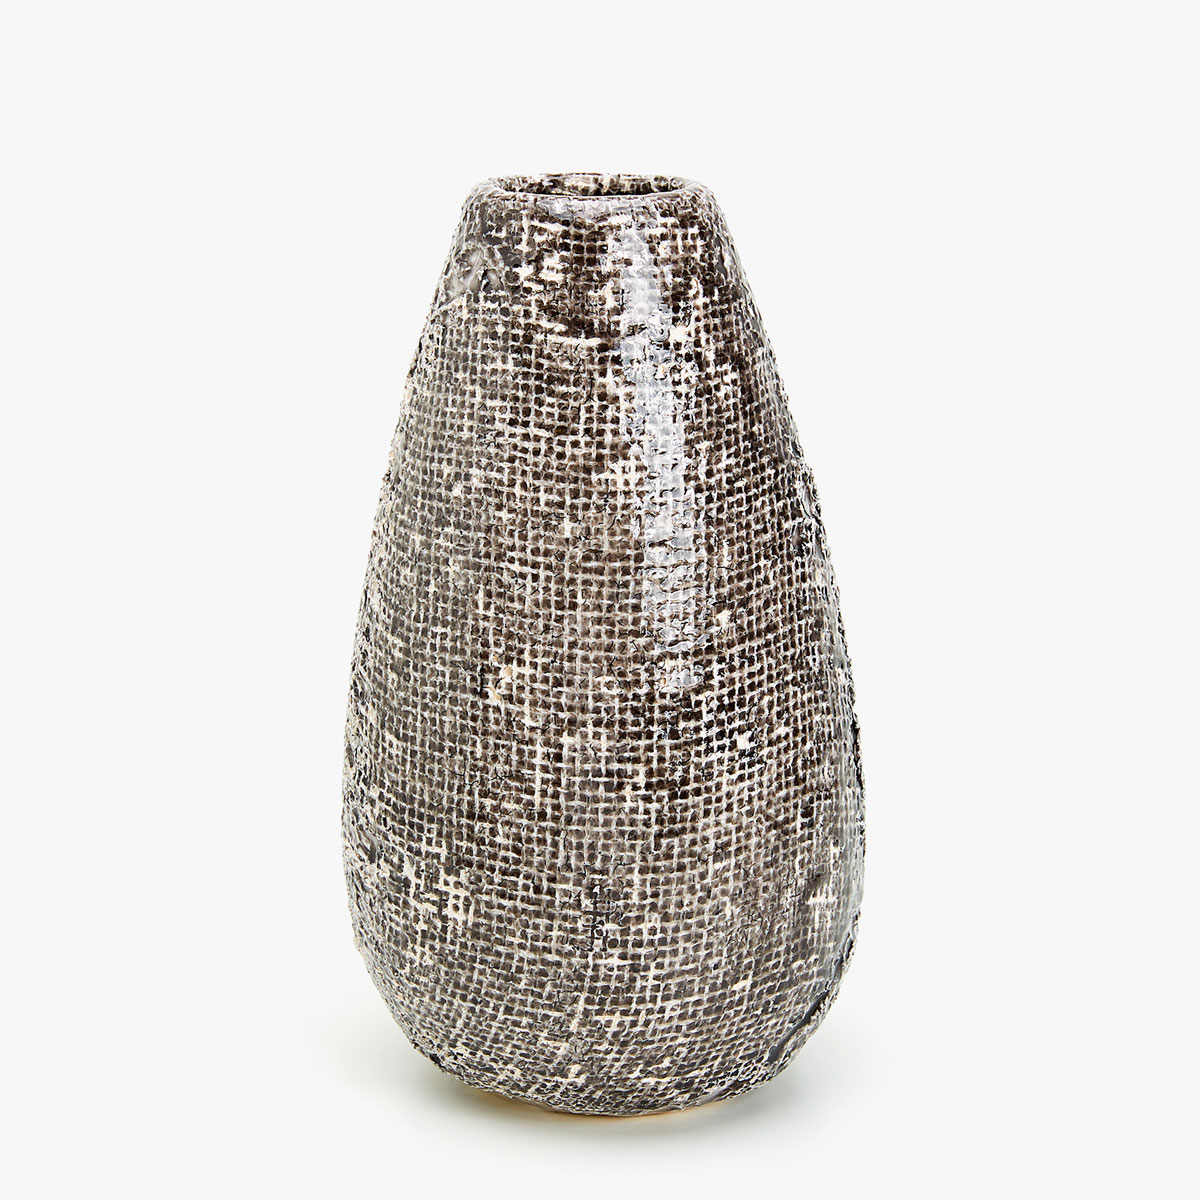 Afbeelding 1 van het product Grijze aardewerken vaas met textuur